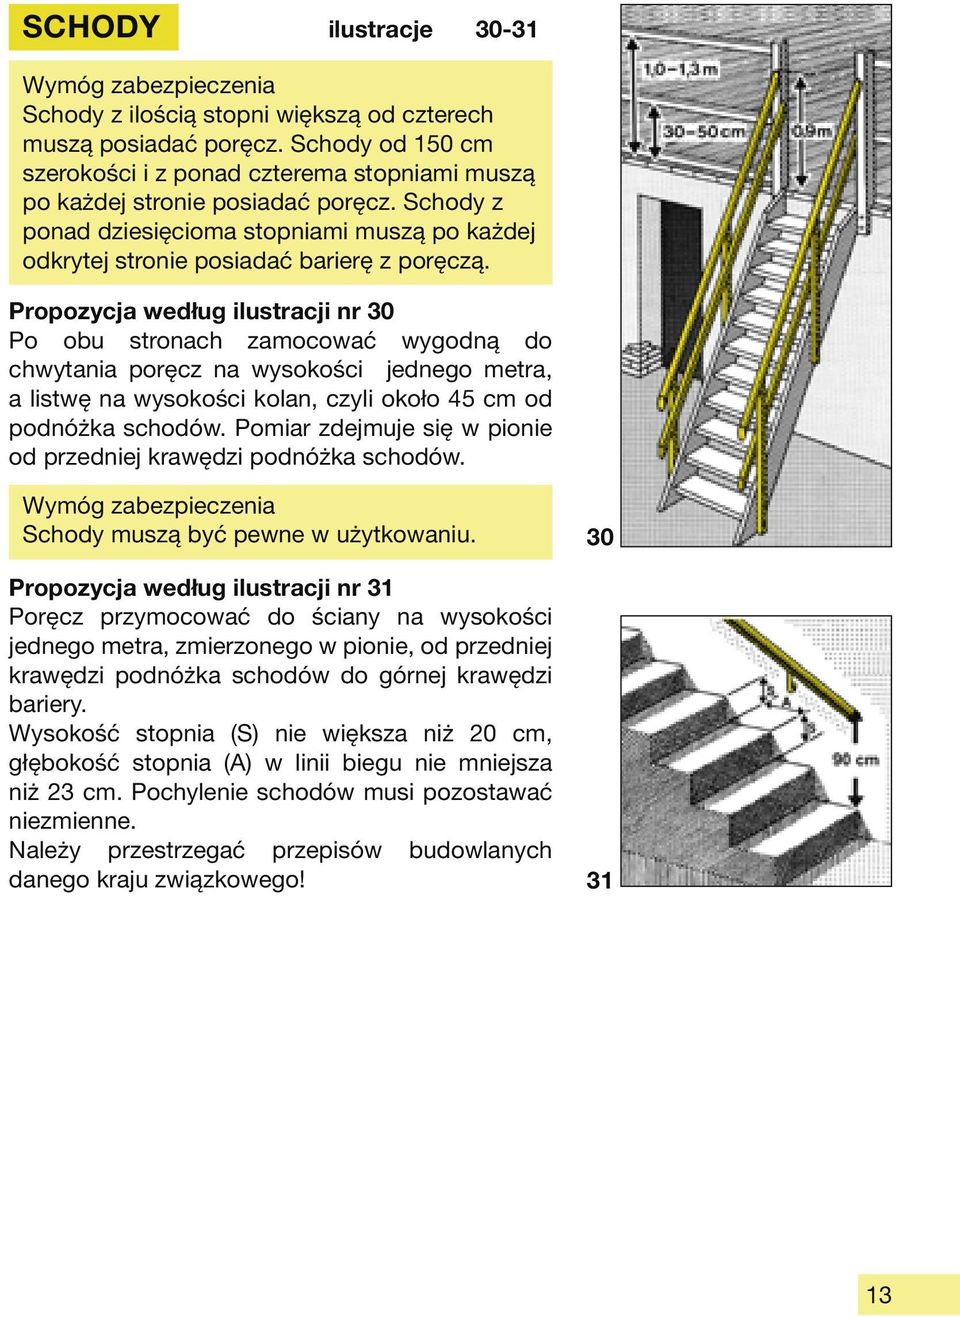 Propozycja według ilustracji nr 30 Po obu stronach zamocować wygodną do chwytania poręcz na wysokości jednego metra, a listwę na wysokości kolan, czyli około 45 cm od podnóżka schodów.